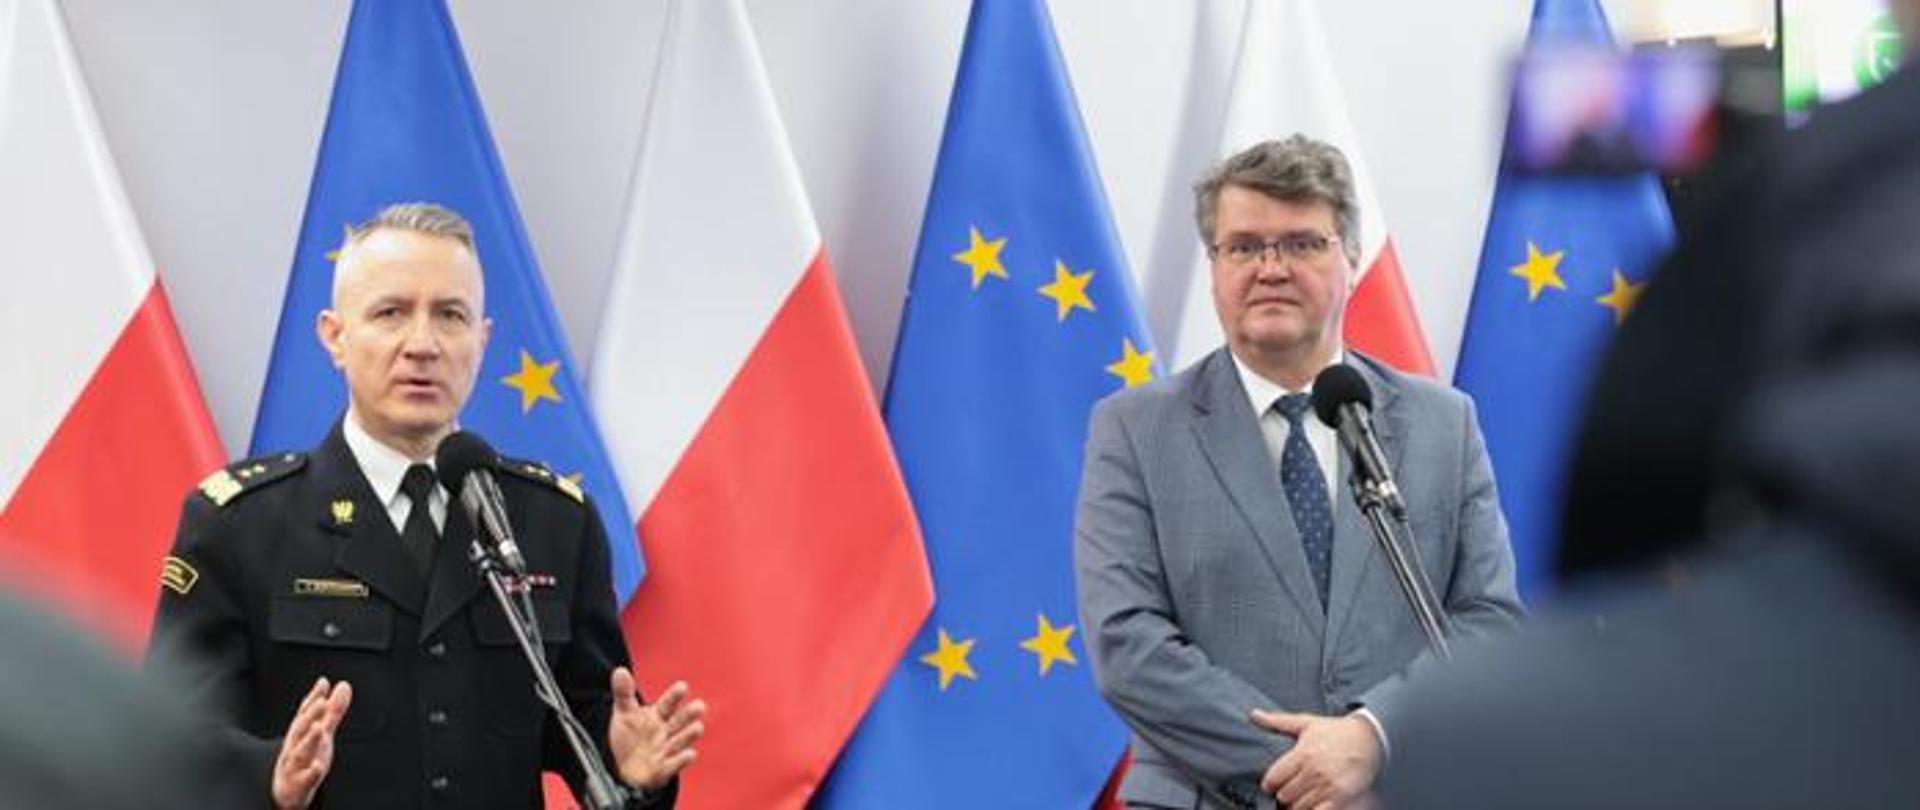 komendant główny psp gen. brygadiera Andrzej Bartkowiak wraz wiceministrem Maciejem Wąsikiem, w tle flagi RP oraz Unii Europejskiej